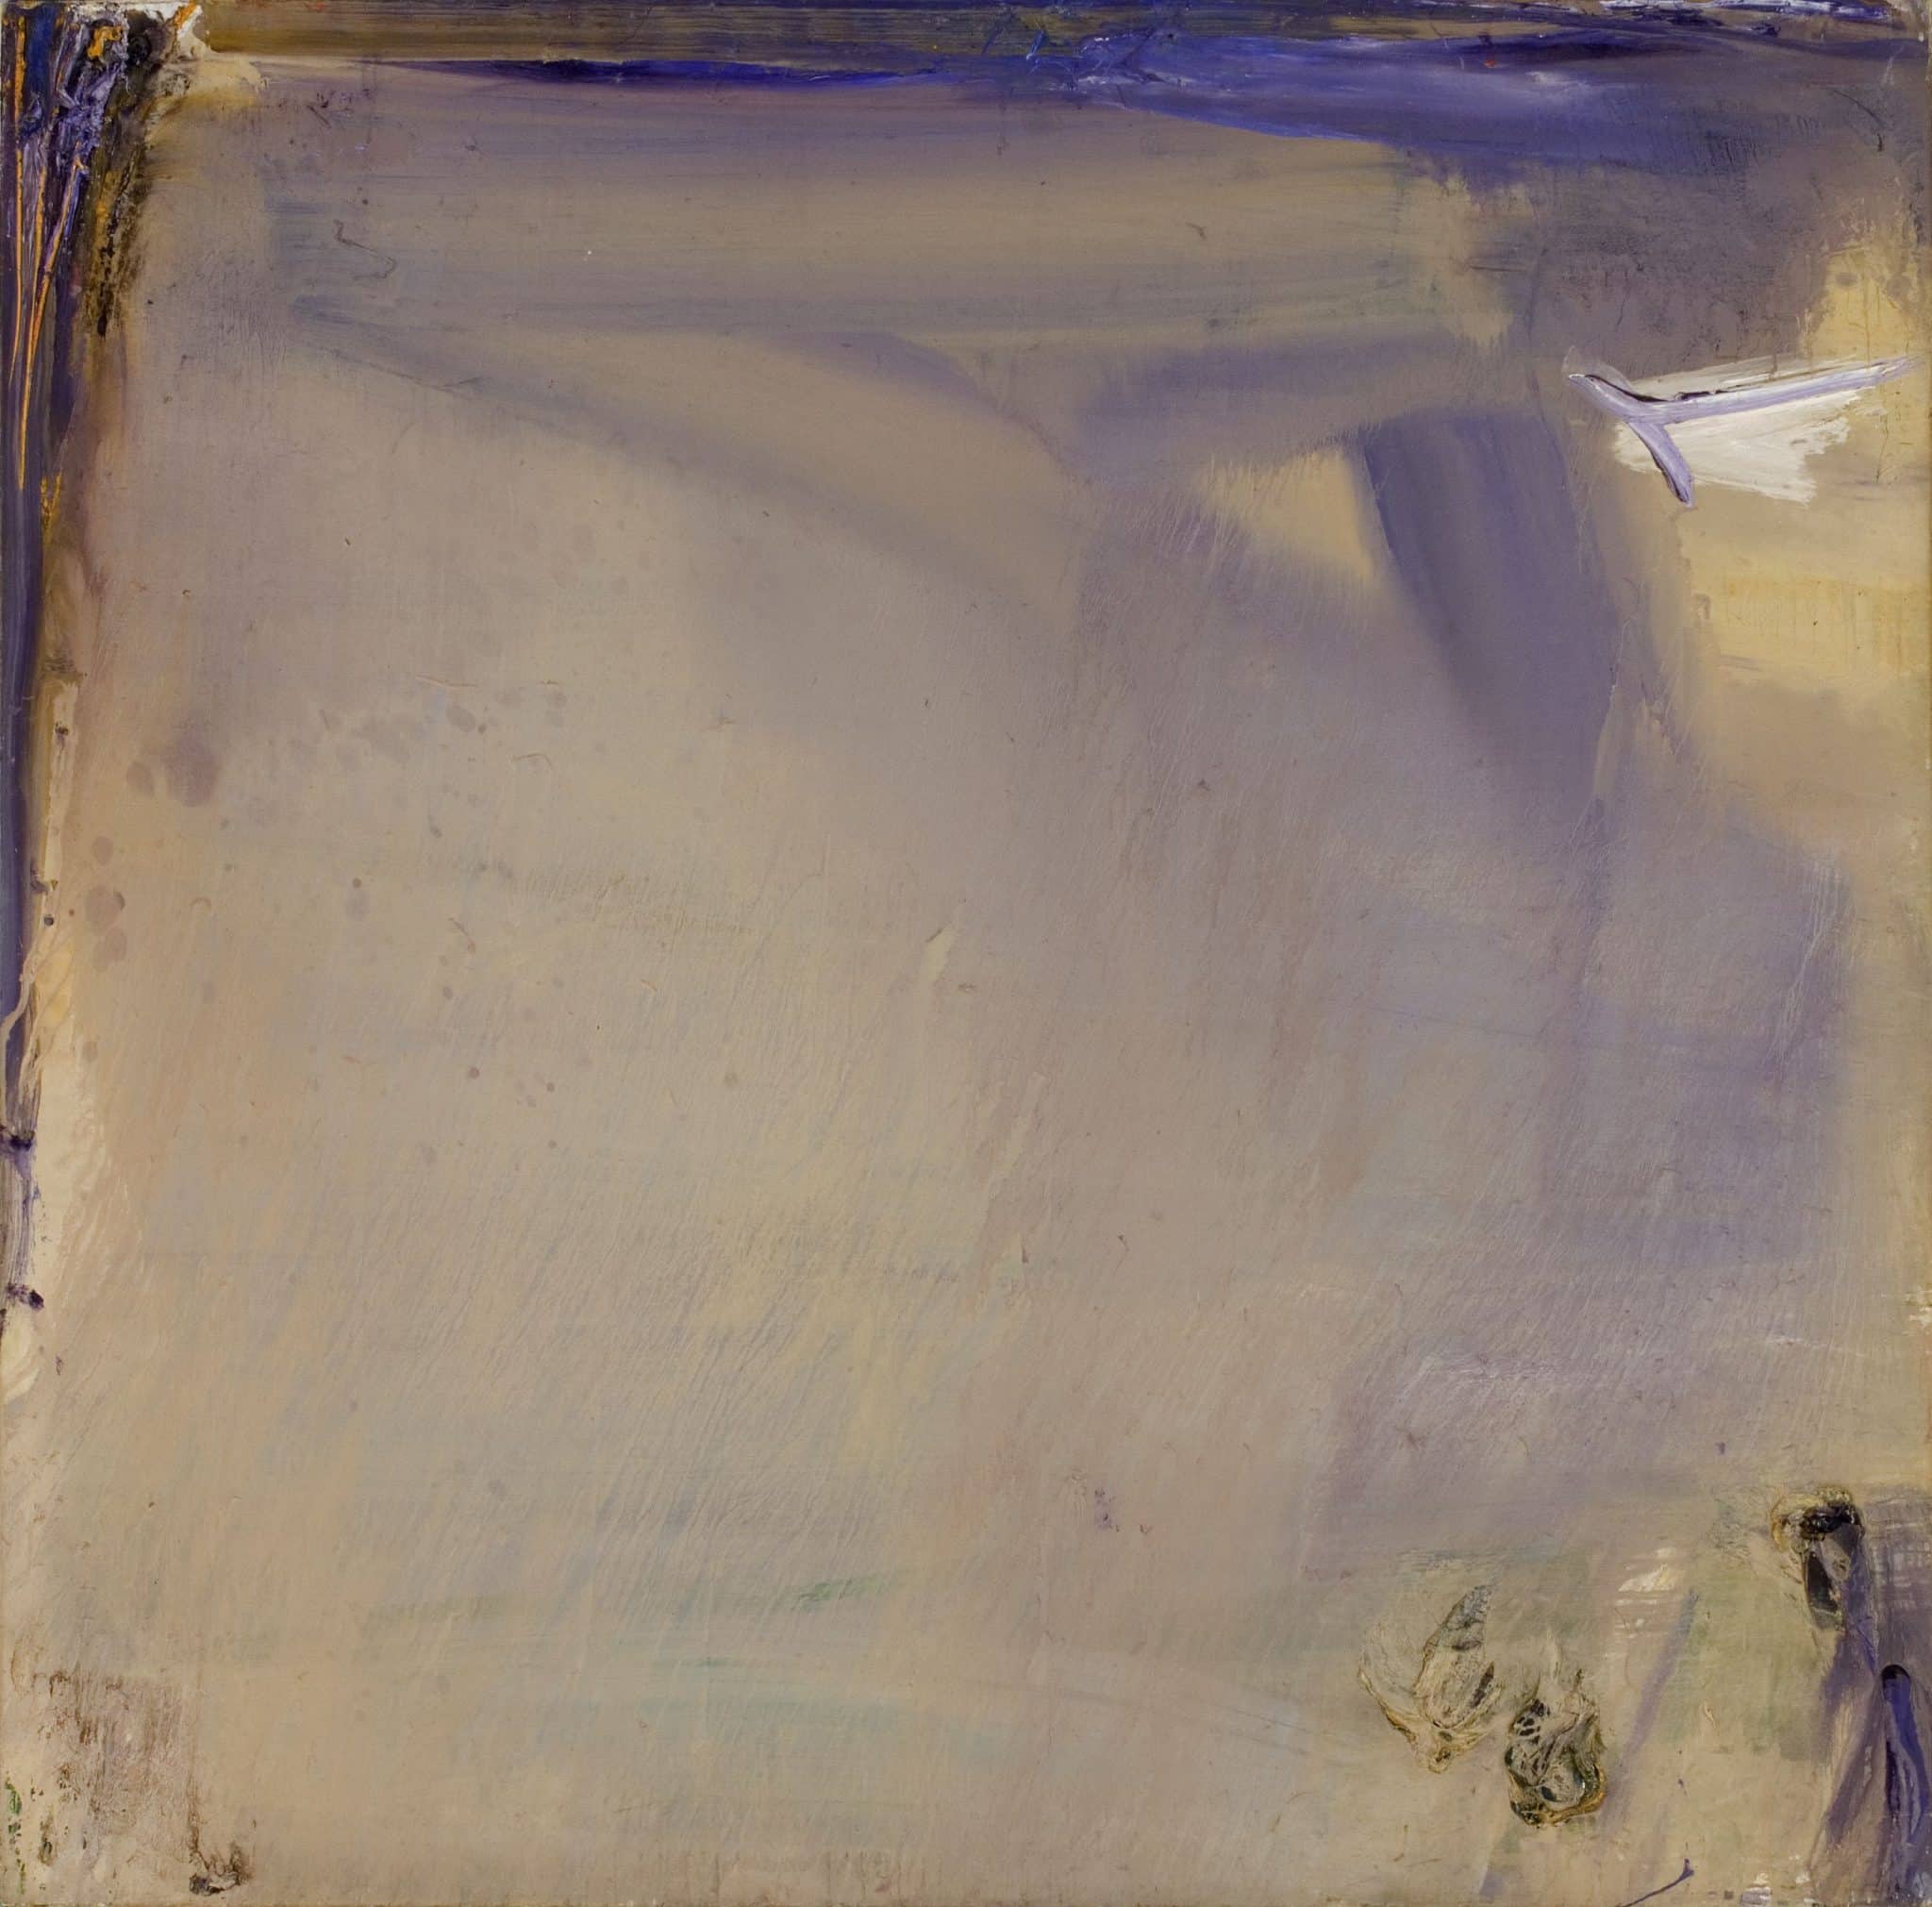 Le sentiment géographique : Olivier Debré, Ocre Violet Loire, huile sur toile, 192 x 194 cm